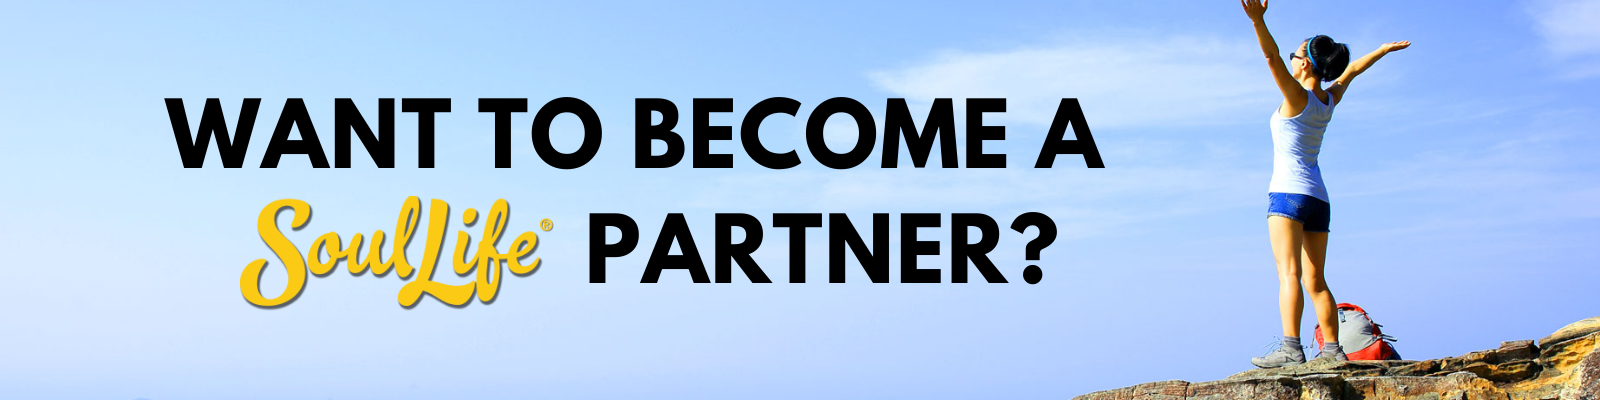 Become a SL Partner - G-Form Header (1)